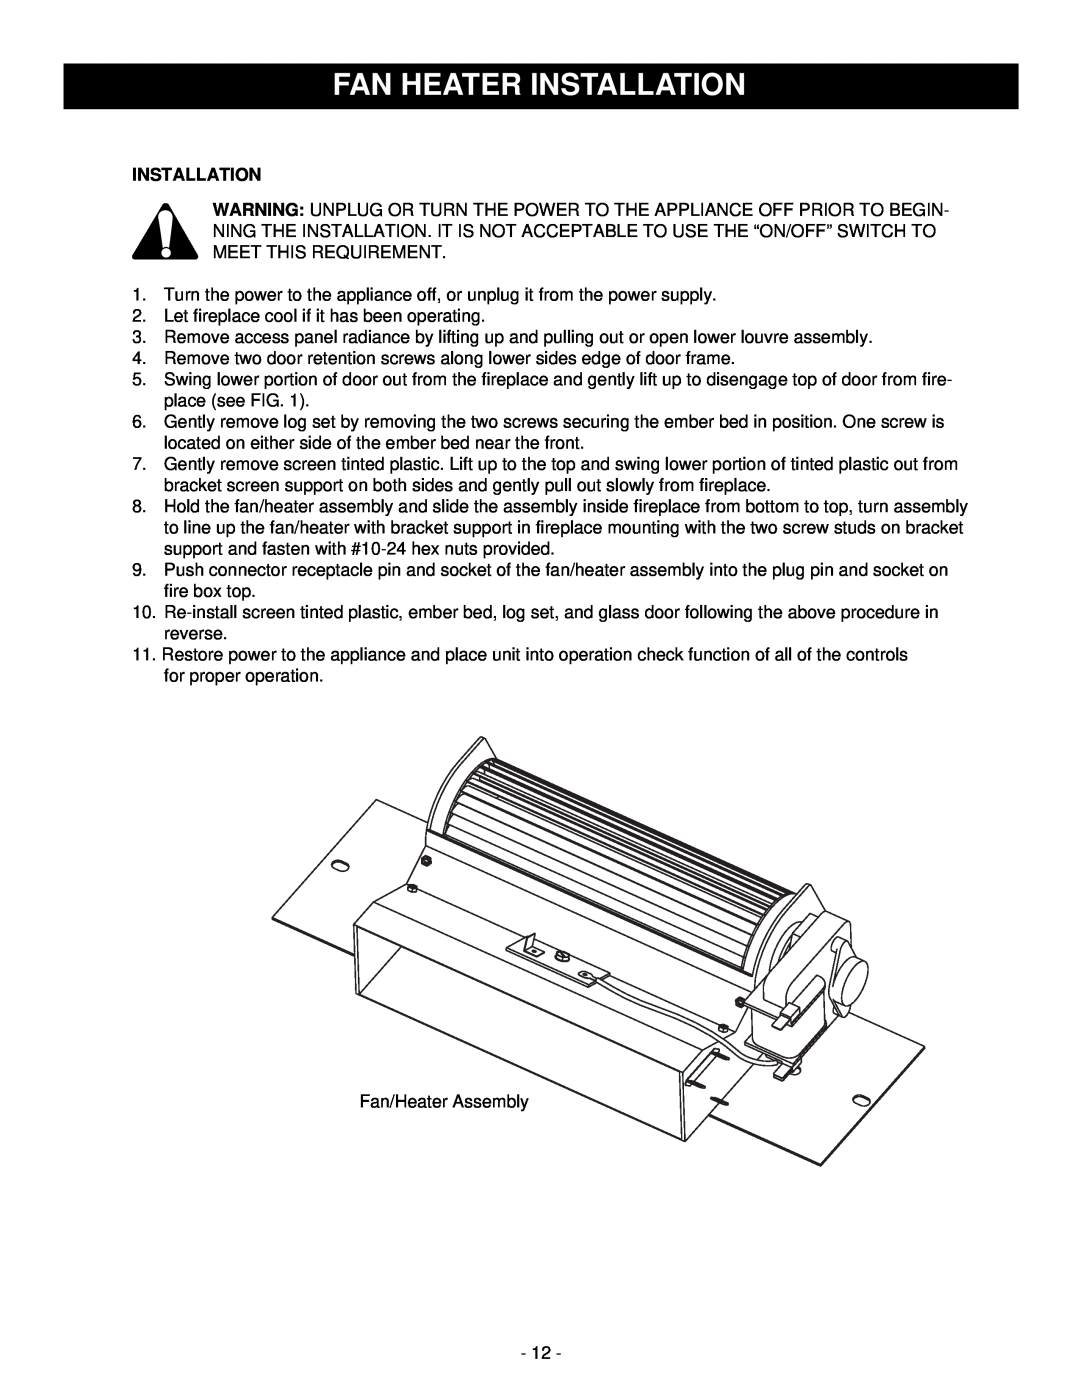 Majestic Appliances HE32EF installation instructions Fan Heater Installation 